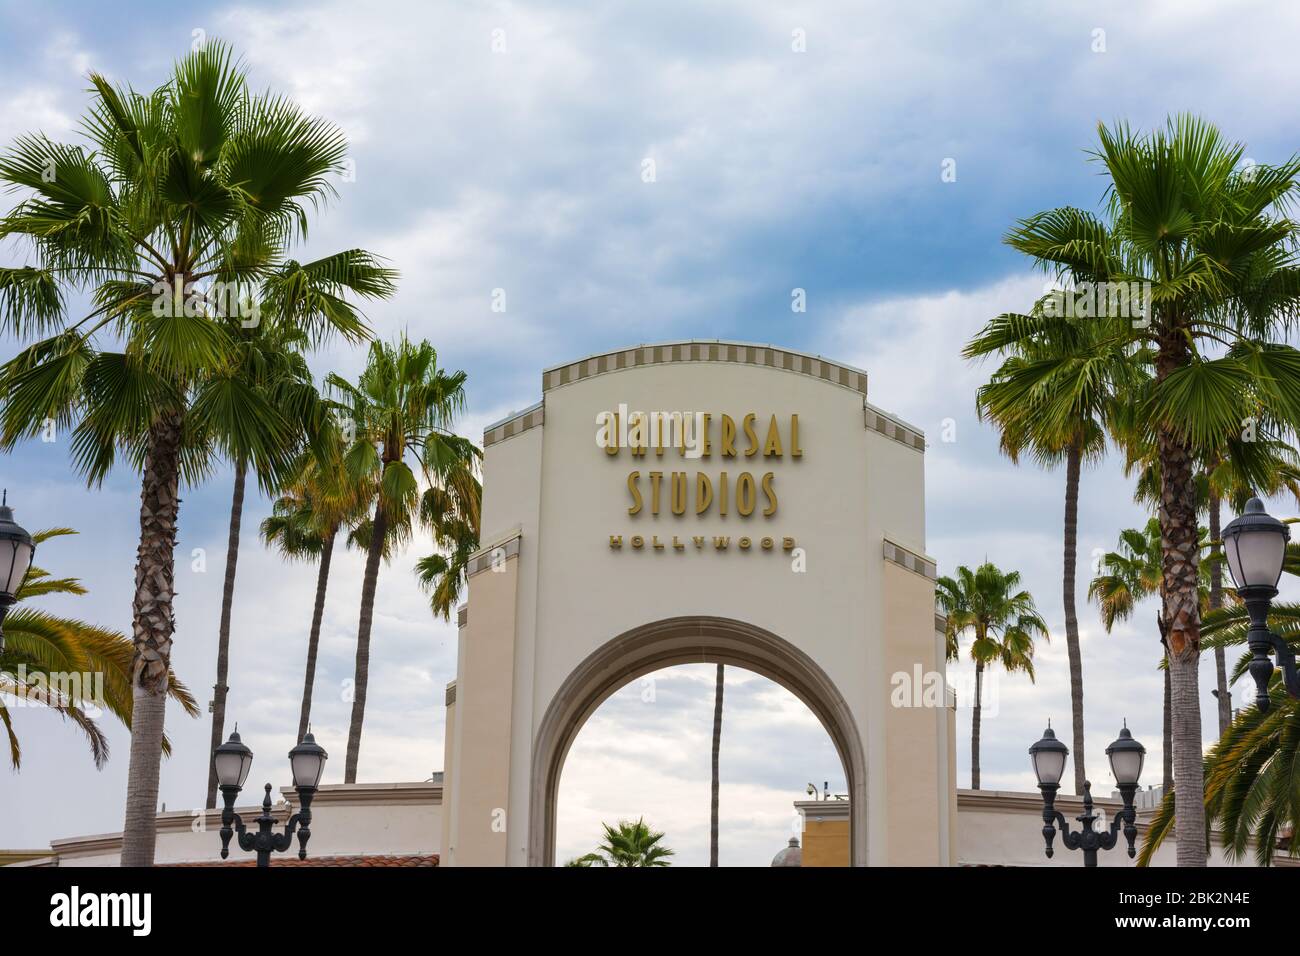 Los Angeles, Californie, États-Unis - 23 juillet 2019 : parc de renommée mondiale Universal Studios à Hollywood Banque D'Images